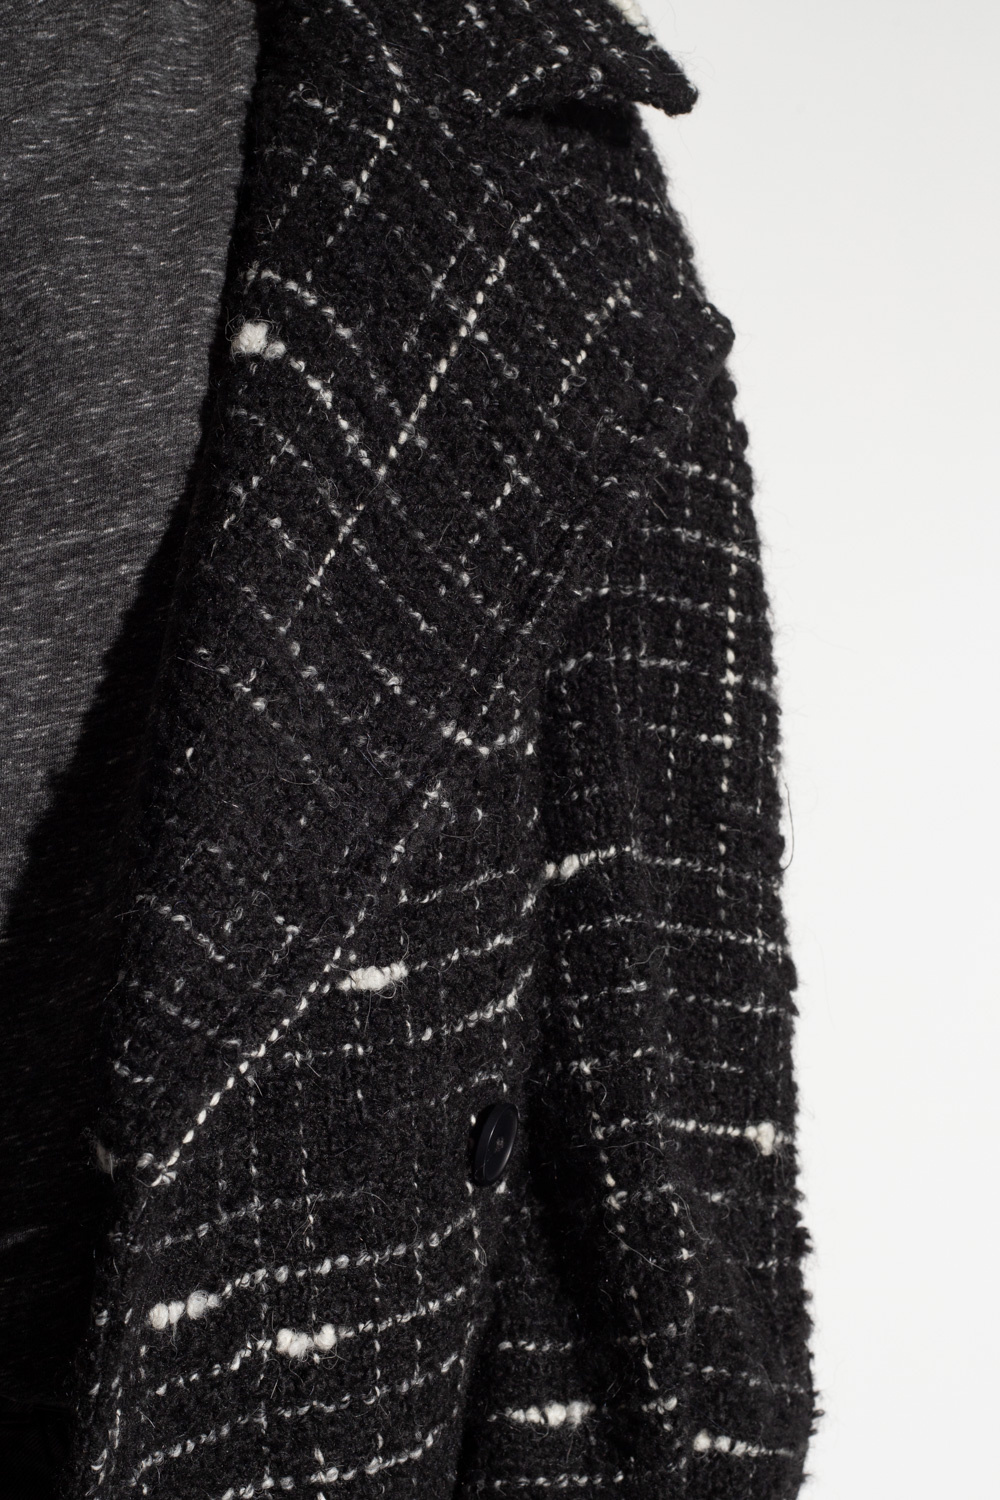 Iro ‘Derek’ tweed coat with belt